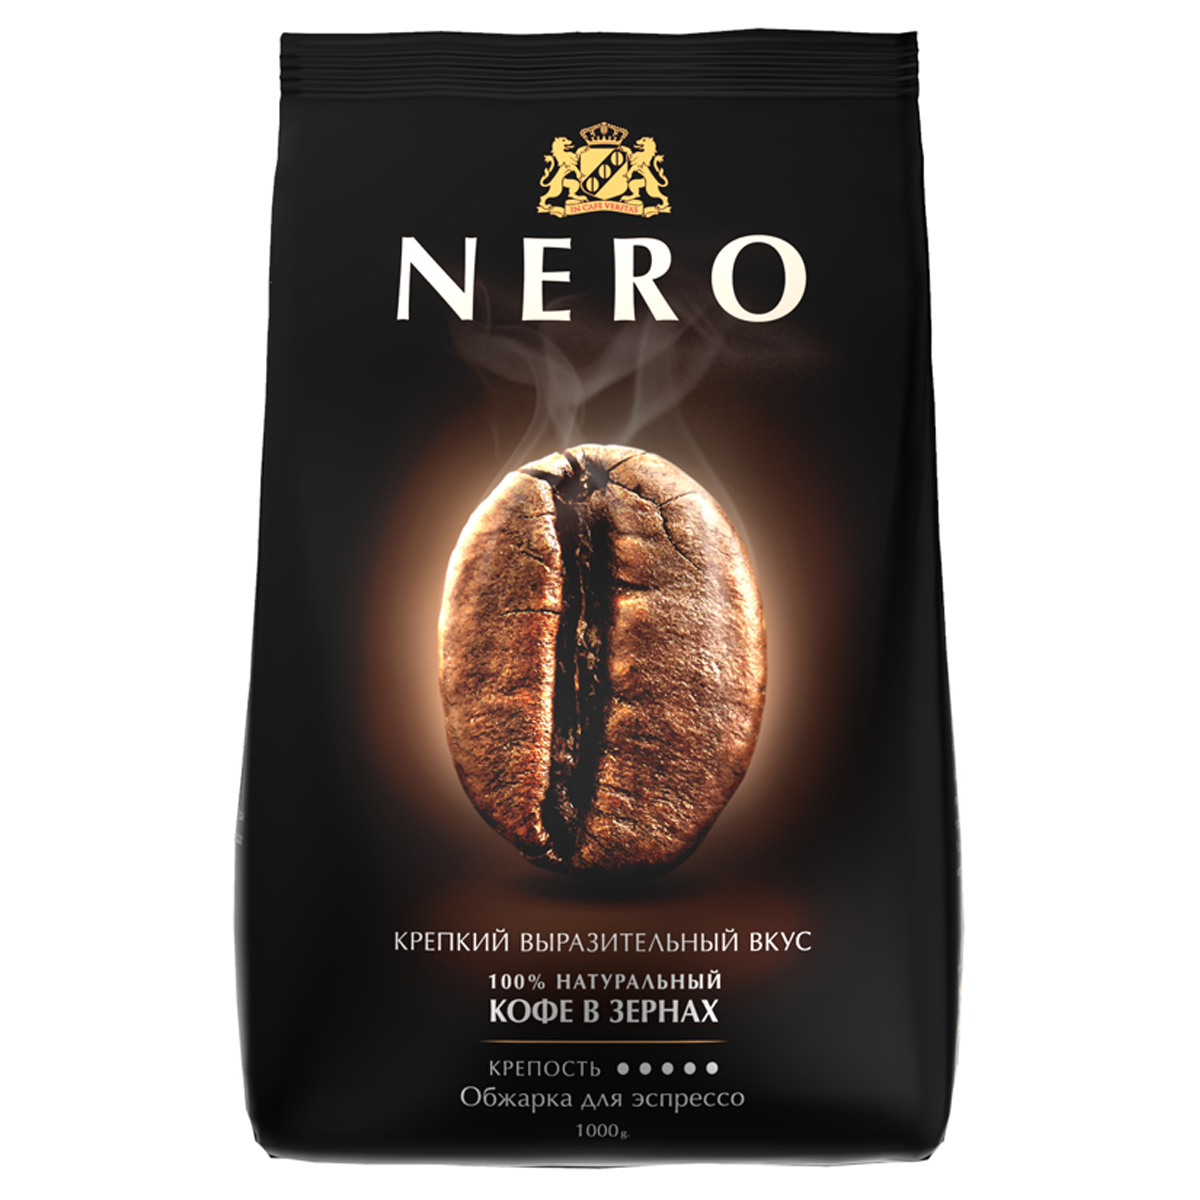 Кофе в зернах Ambassador "Nero", пакет, 1кг